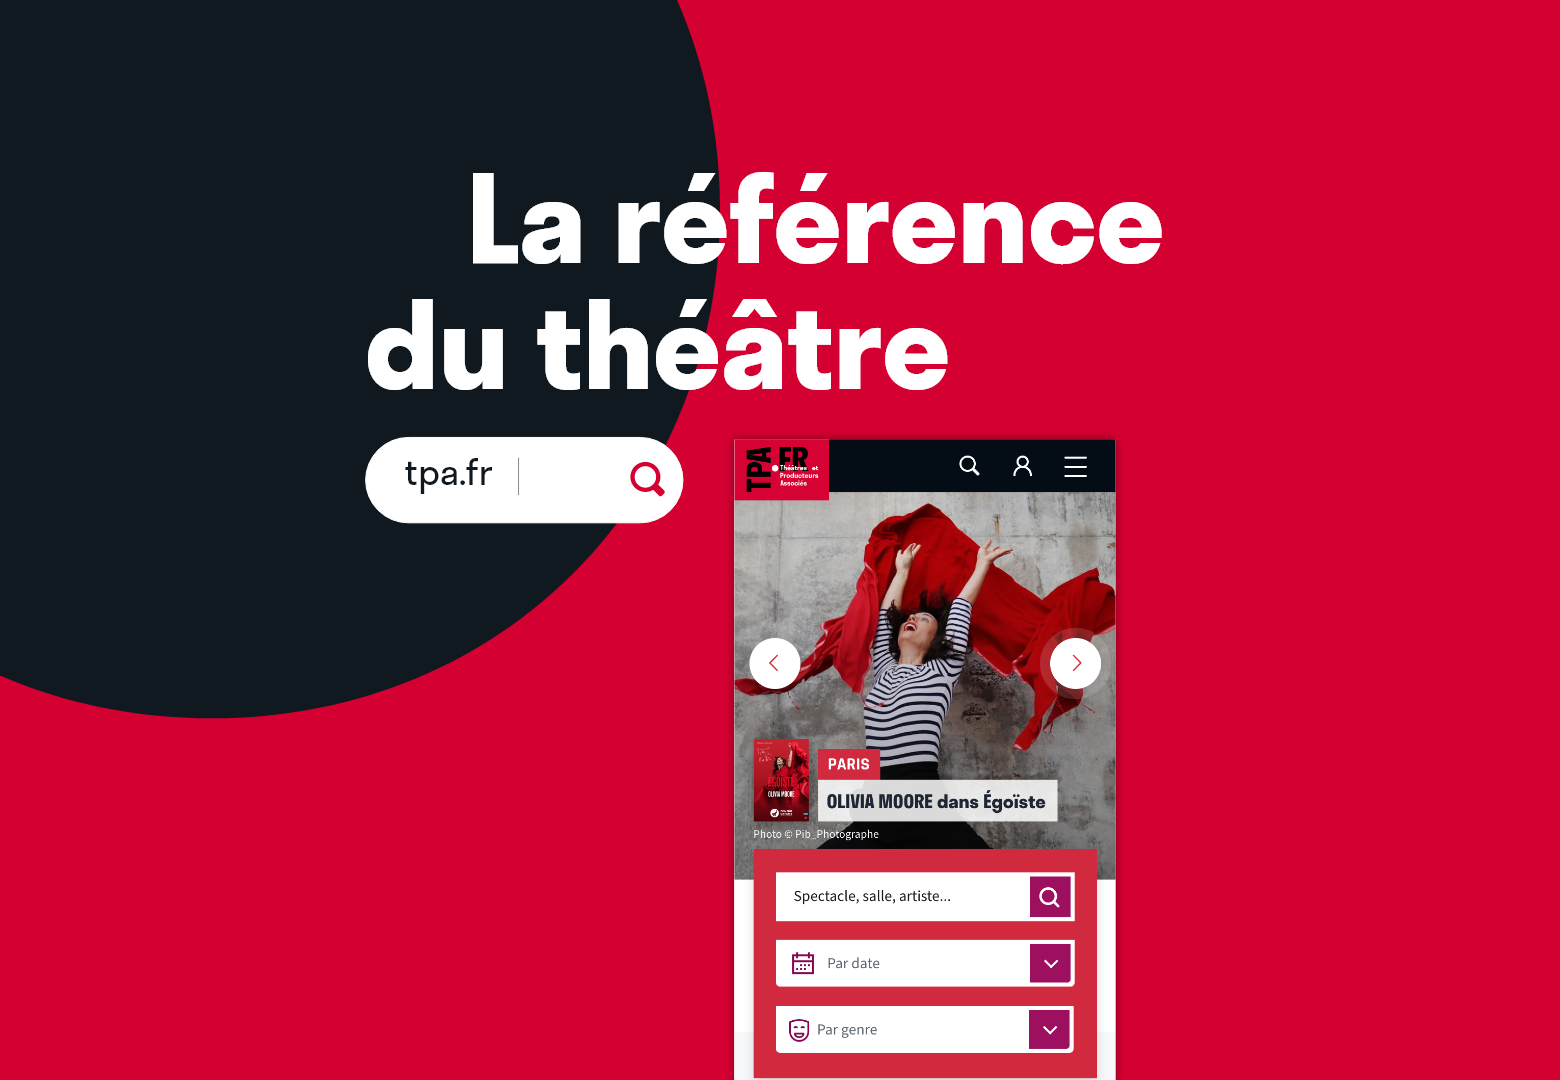 Tpa.fr Theatres et Producteurs Associés by proffice.agency